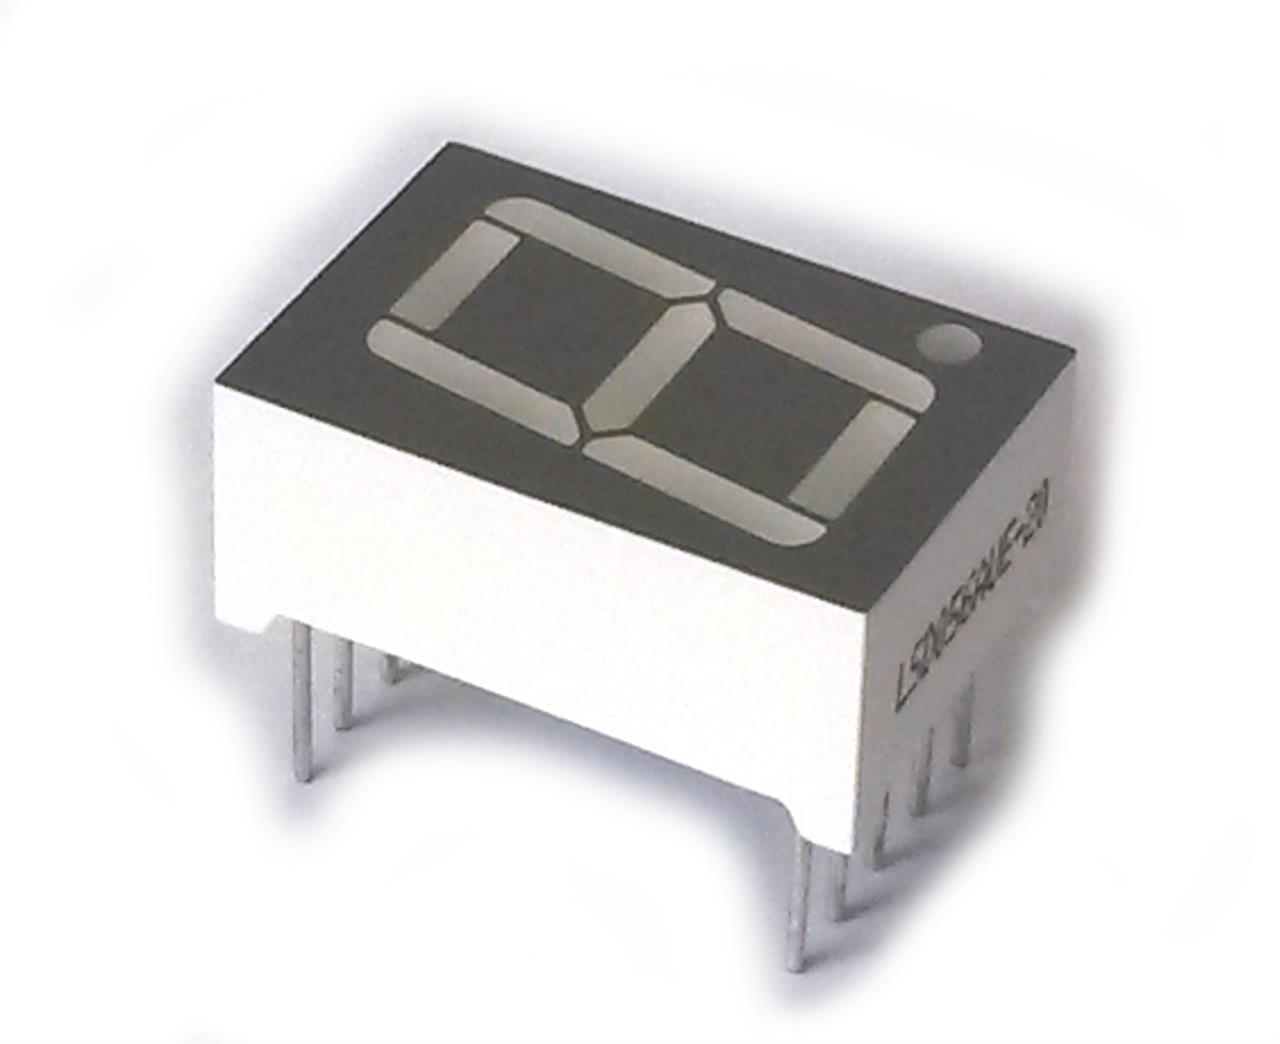 Diodos semicondutores retificadores, detectores e emissores de luz - Display 7 segmentos D168K vermelho catodo comum